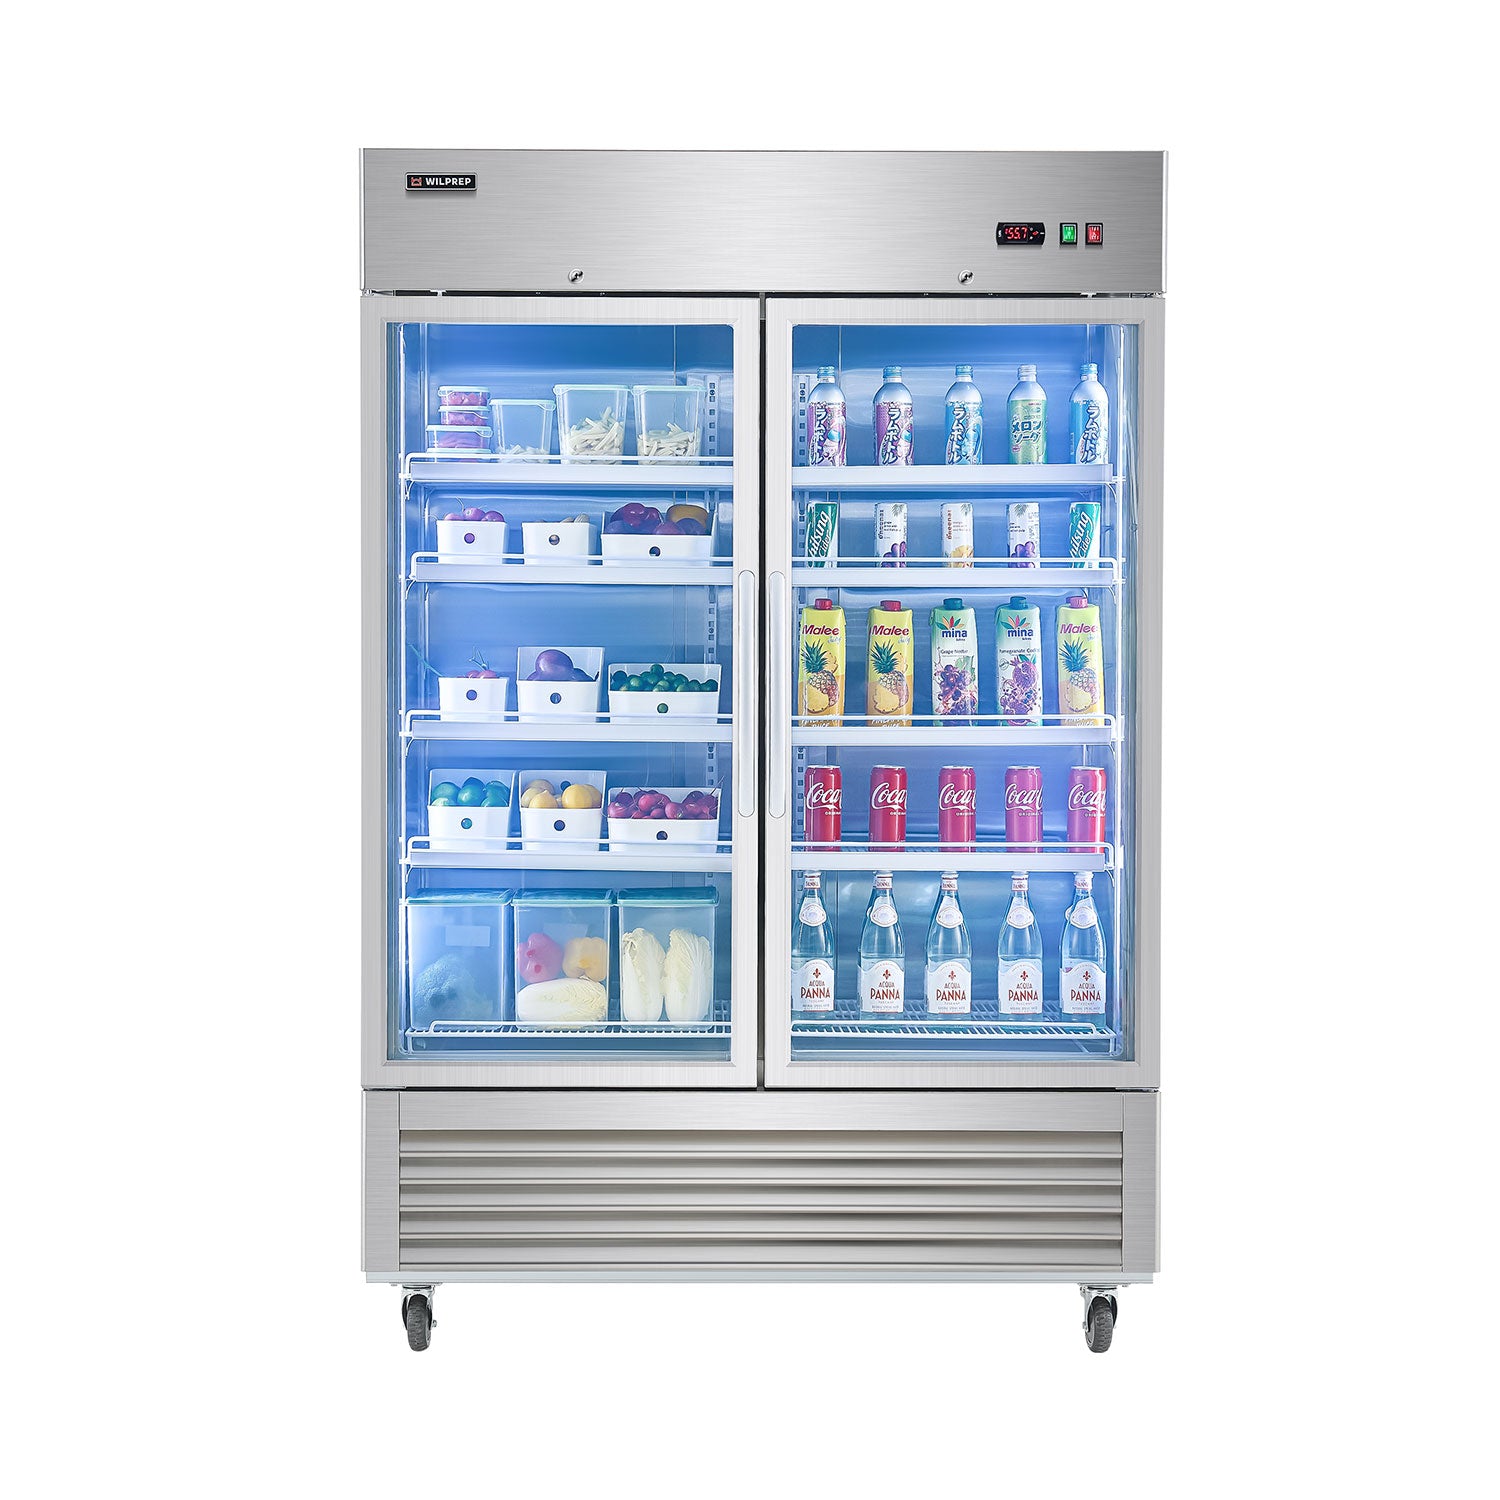 54.1" Commercial Merchandiser Refrigerator Two Glass Door  42.2 cu. ft. Capacity